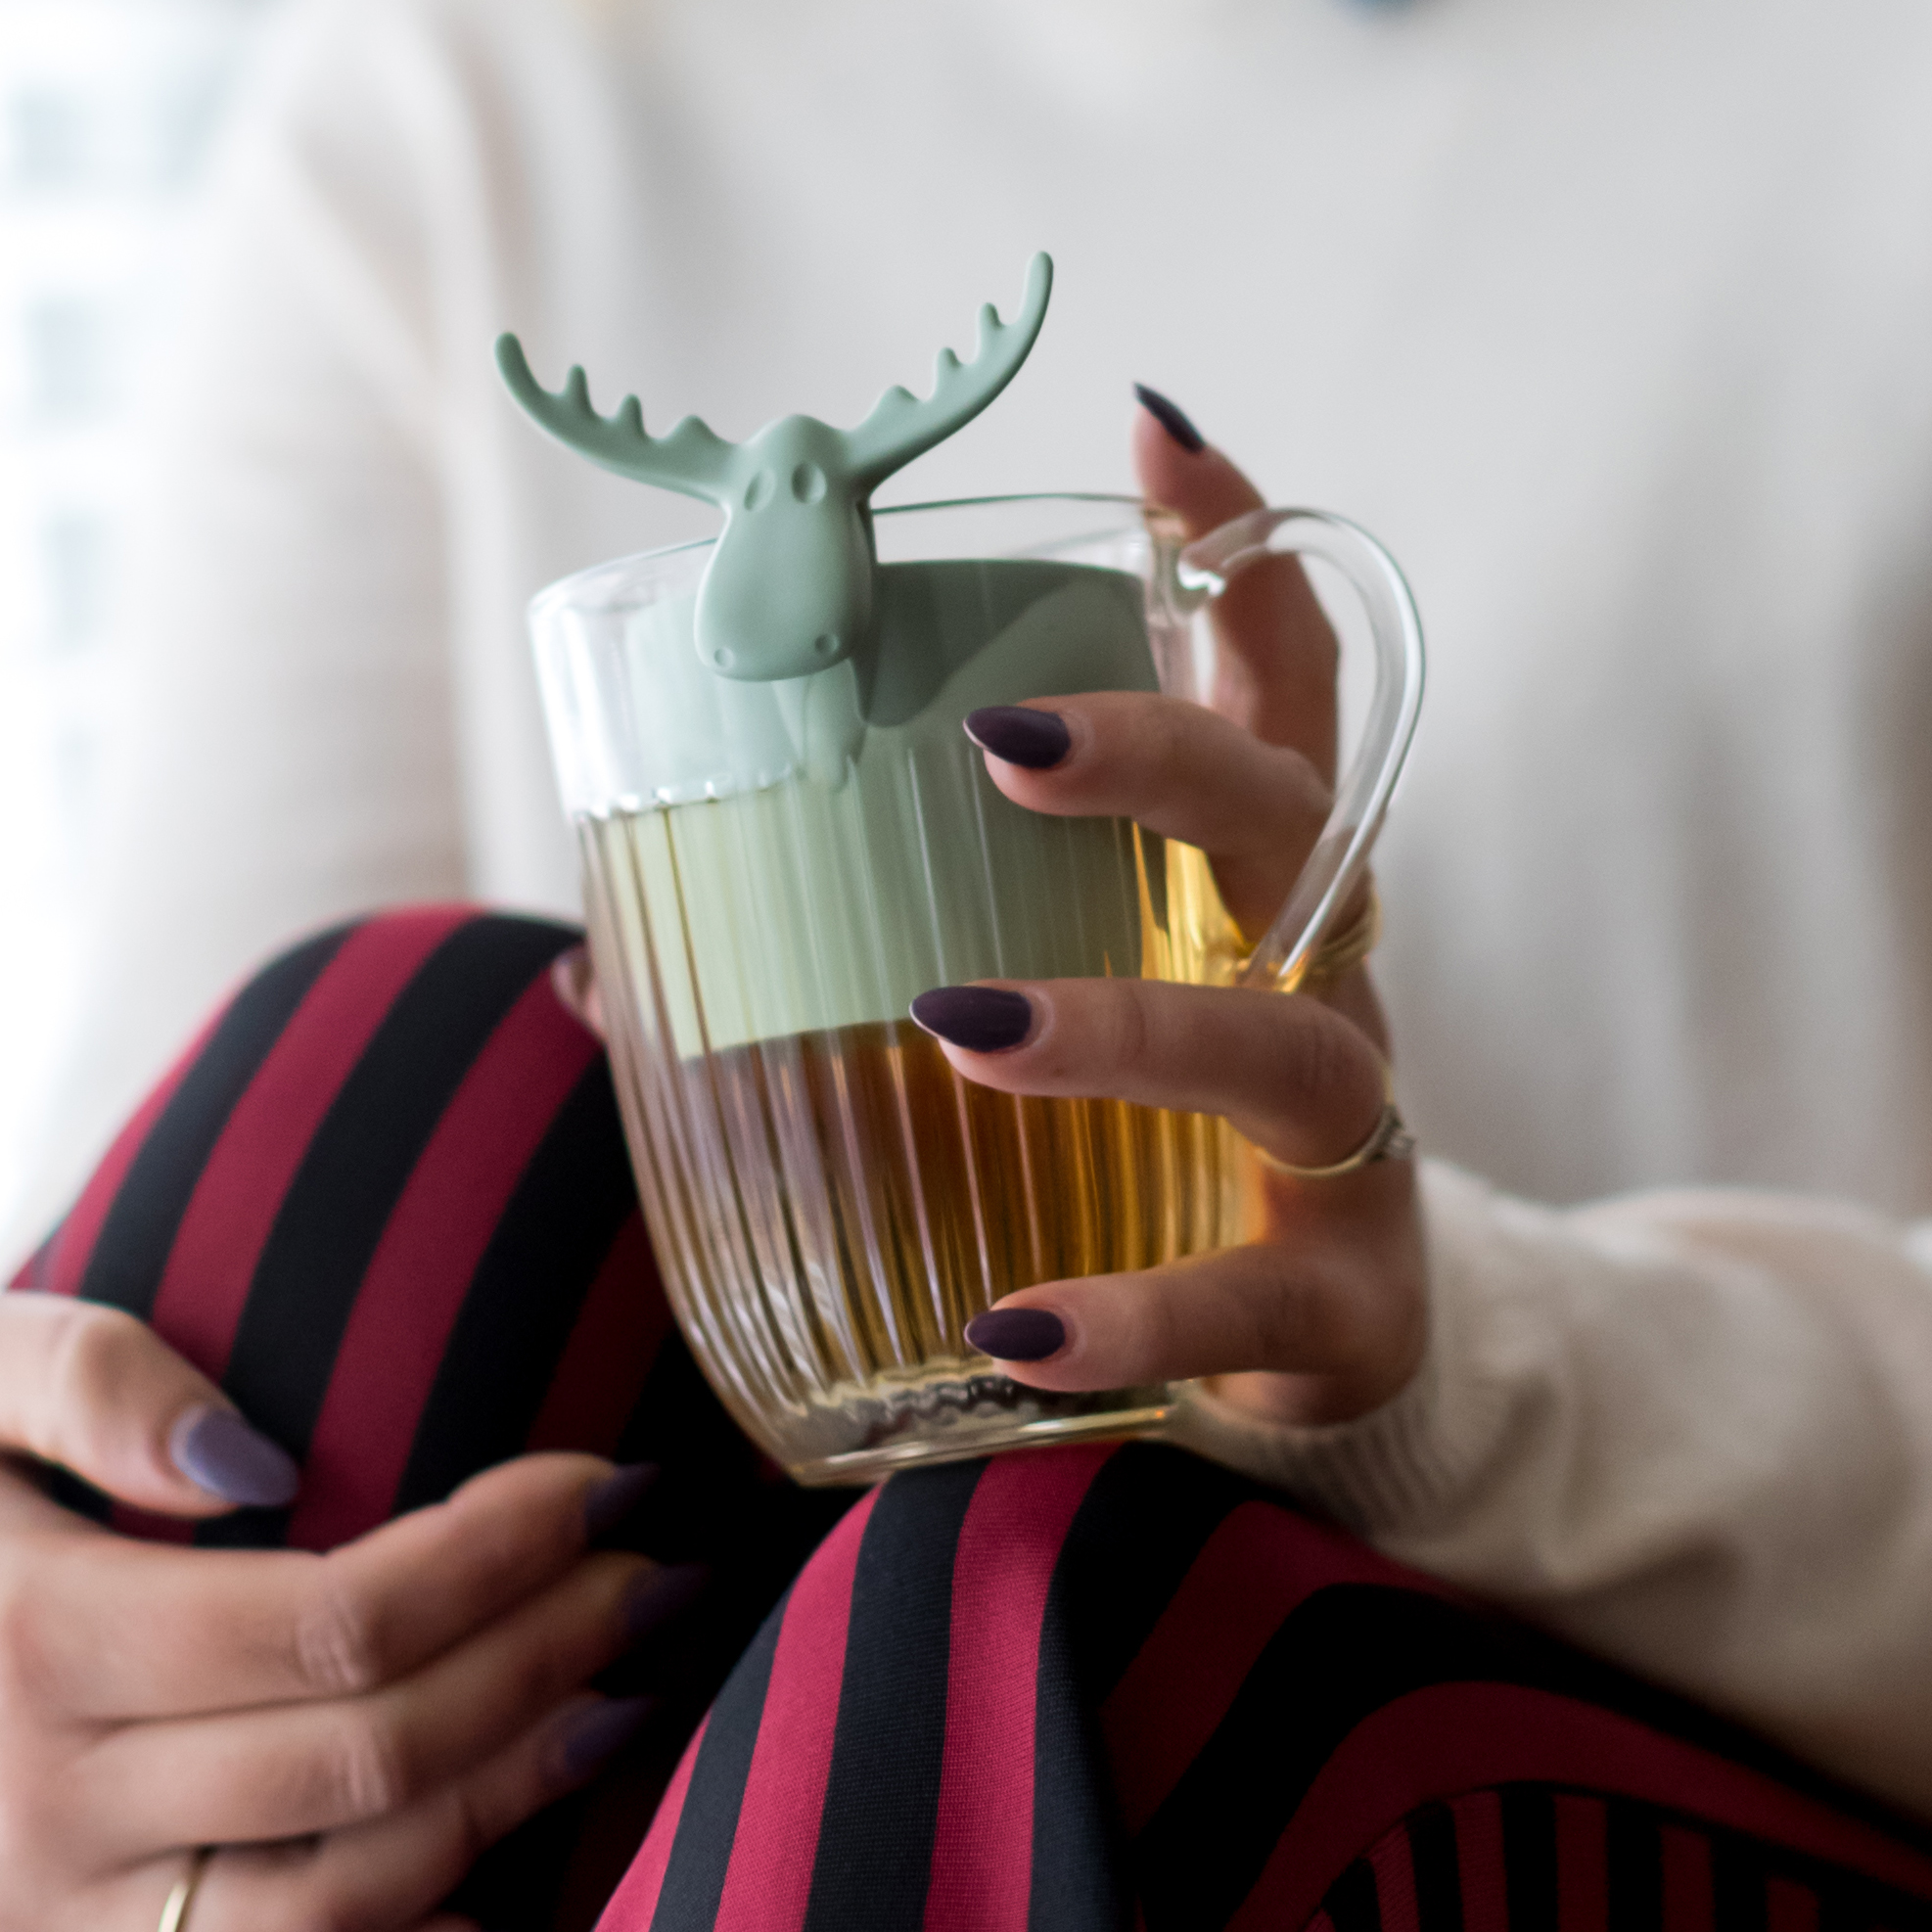 thermoplastic white 6.6 x 7.3 x 9 cm koziol tea strainer Rudolf 